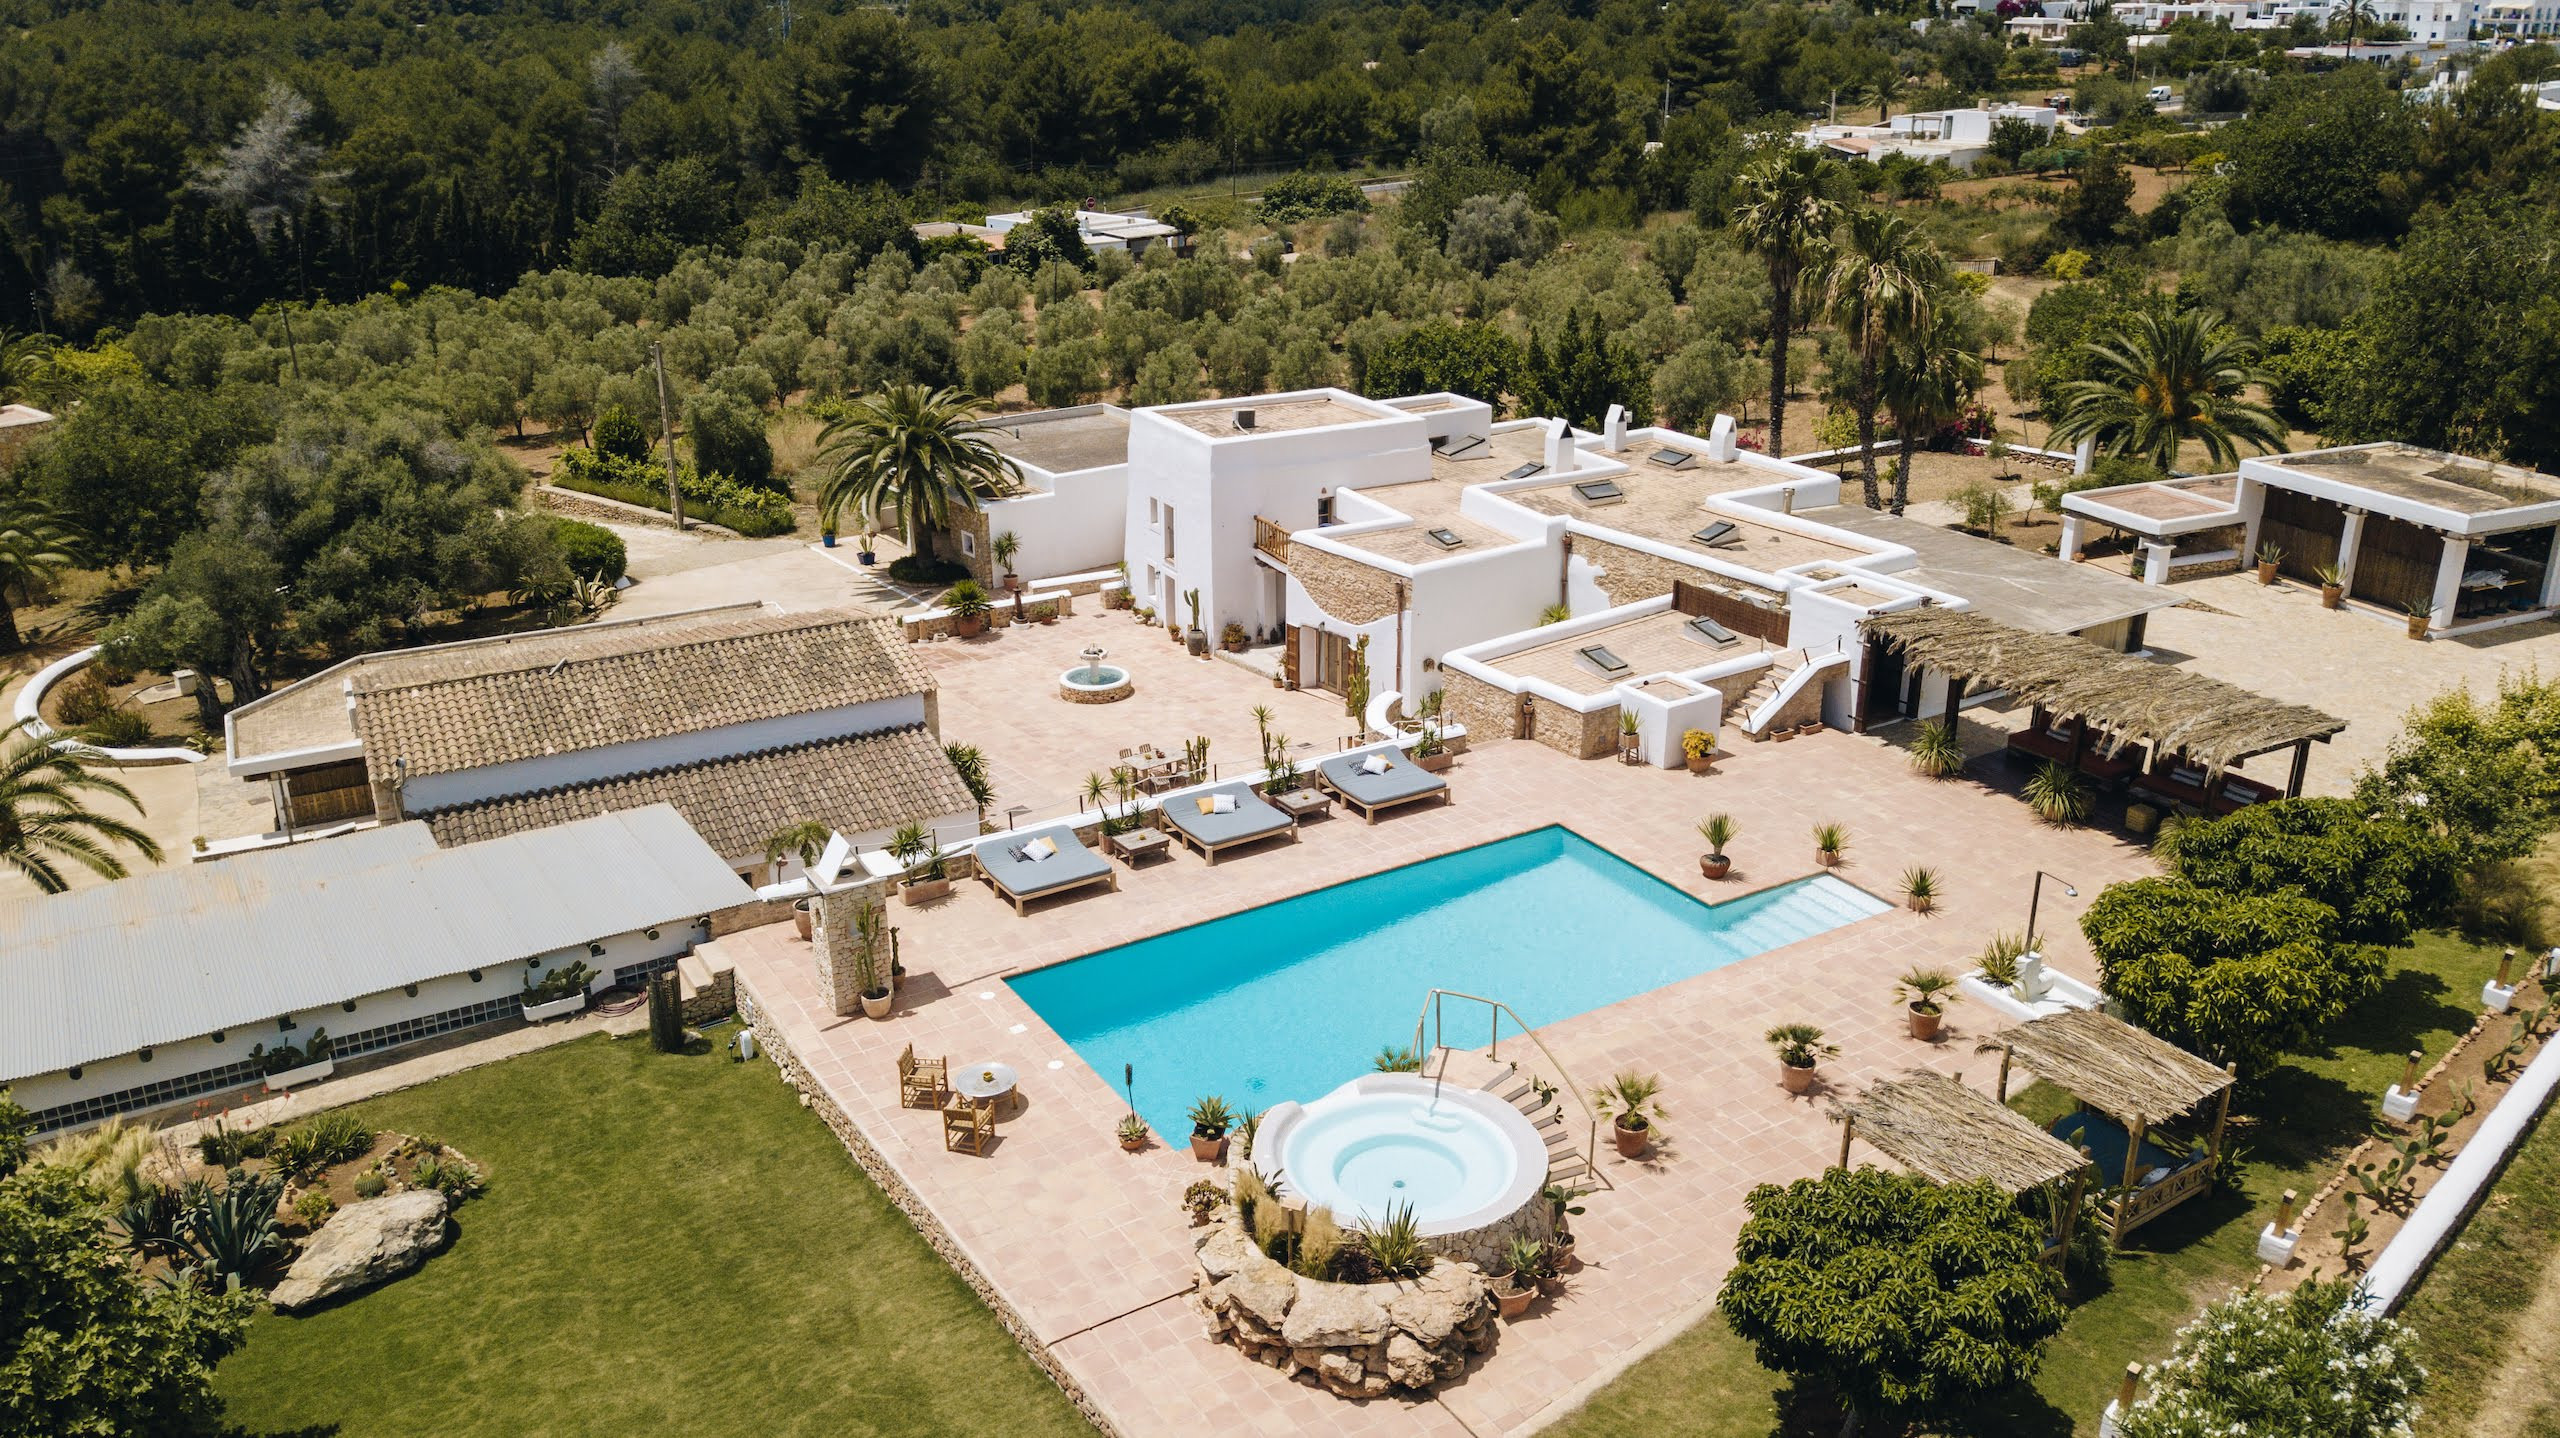 Vista aérea de la villa Las Hadas en Ibiza con su piscina, terraza y jacuzzi